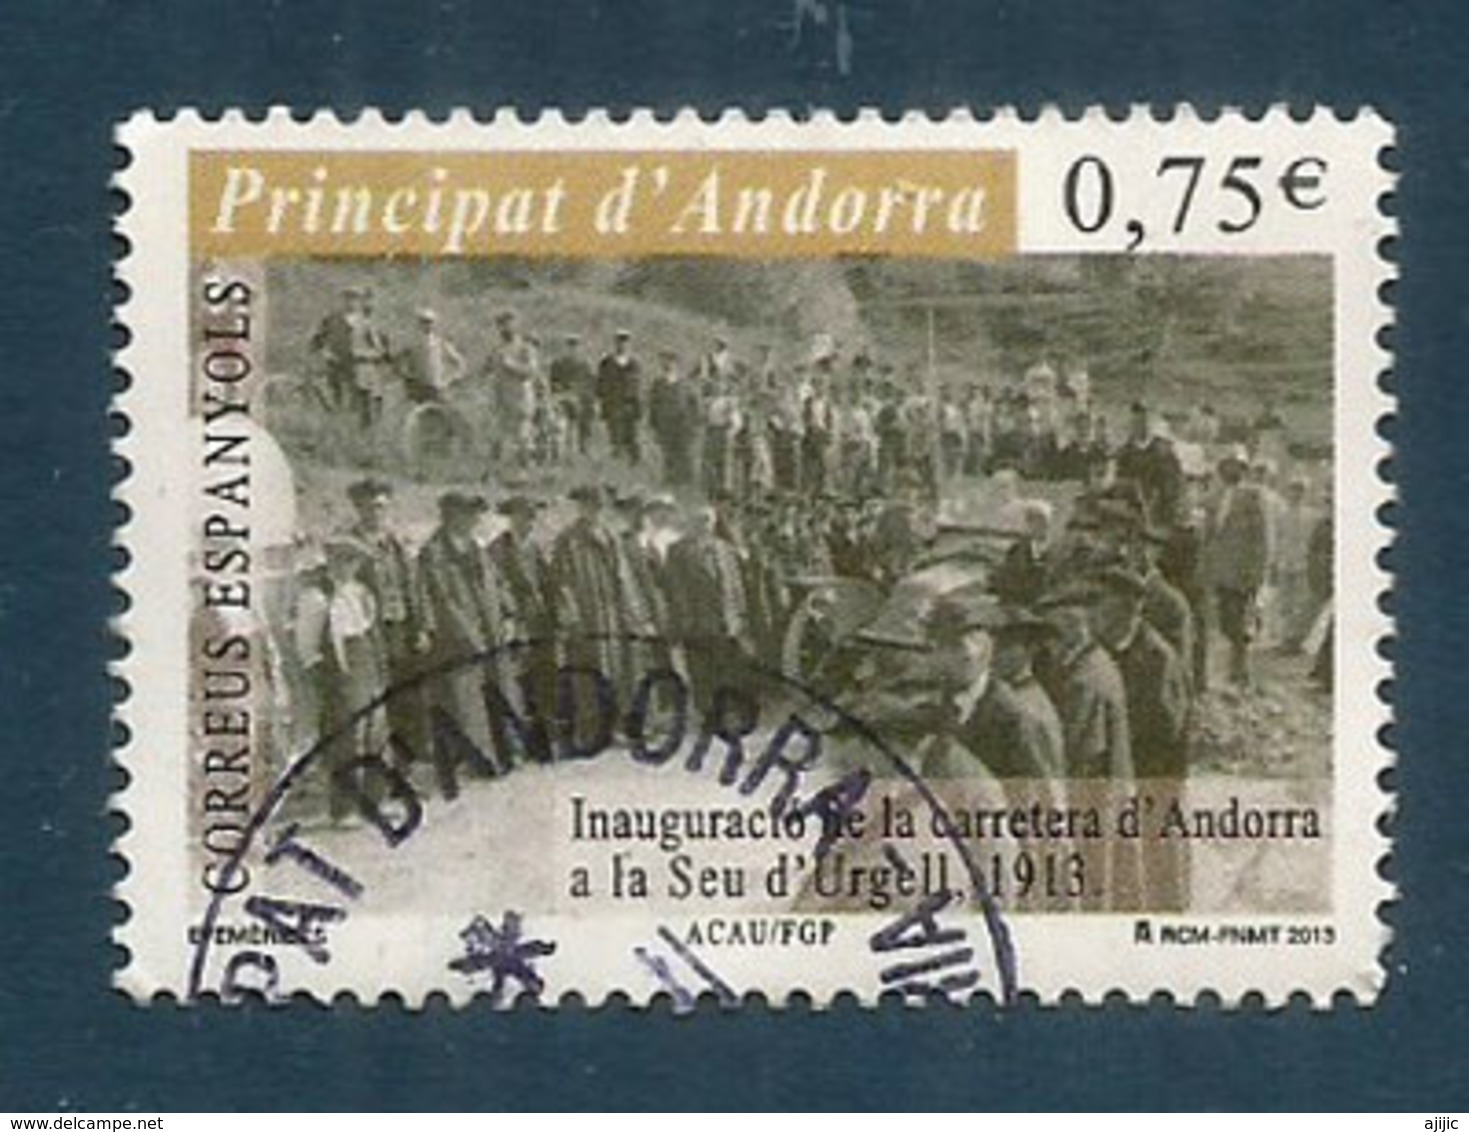 Première Route D'accès D'Andorre En 1913, Vers L'Espagne, Un Timbre Oblitéré, 1 ère Qualité, Année 2013.AND.ESP - Usados